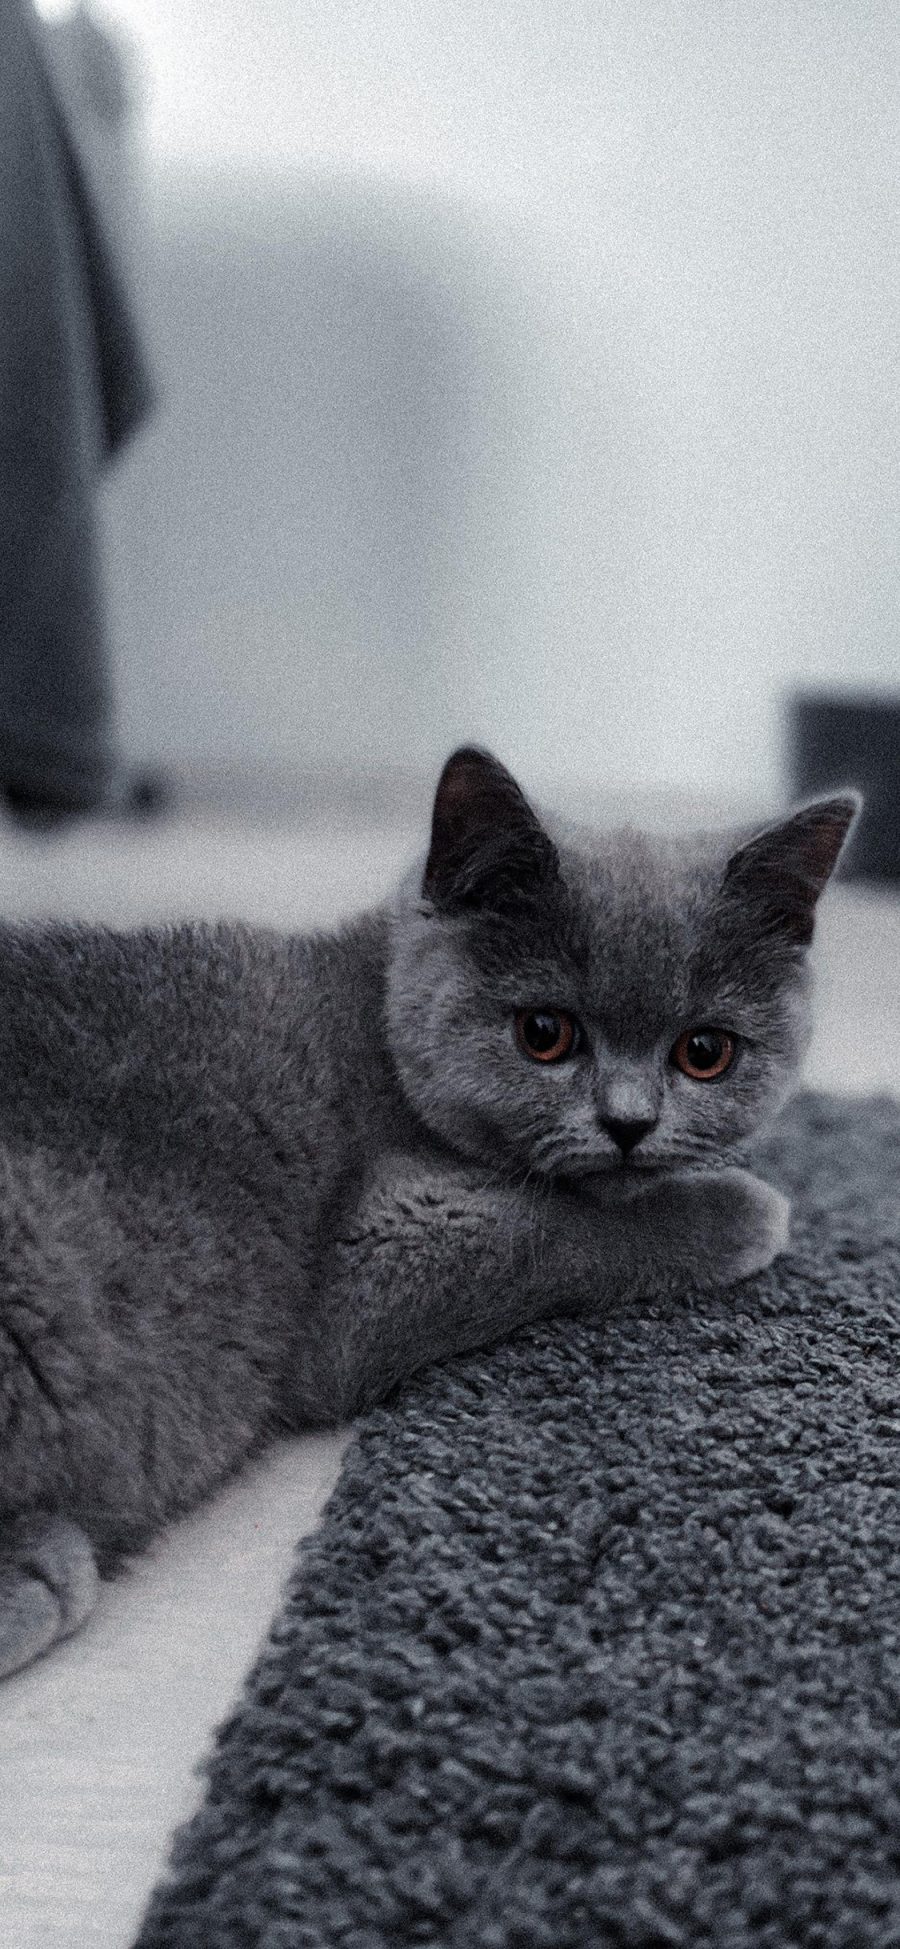 [2436×1125]猫咪 喵星人 宠物 萌 可爱 灰色 苹果手机壁纸图片